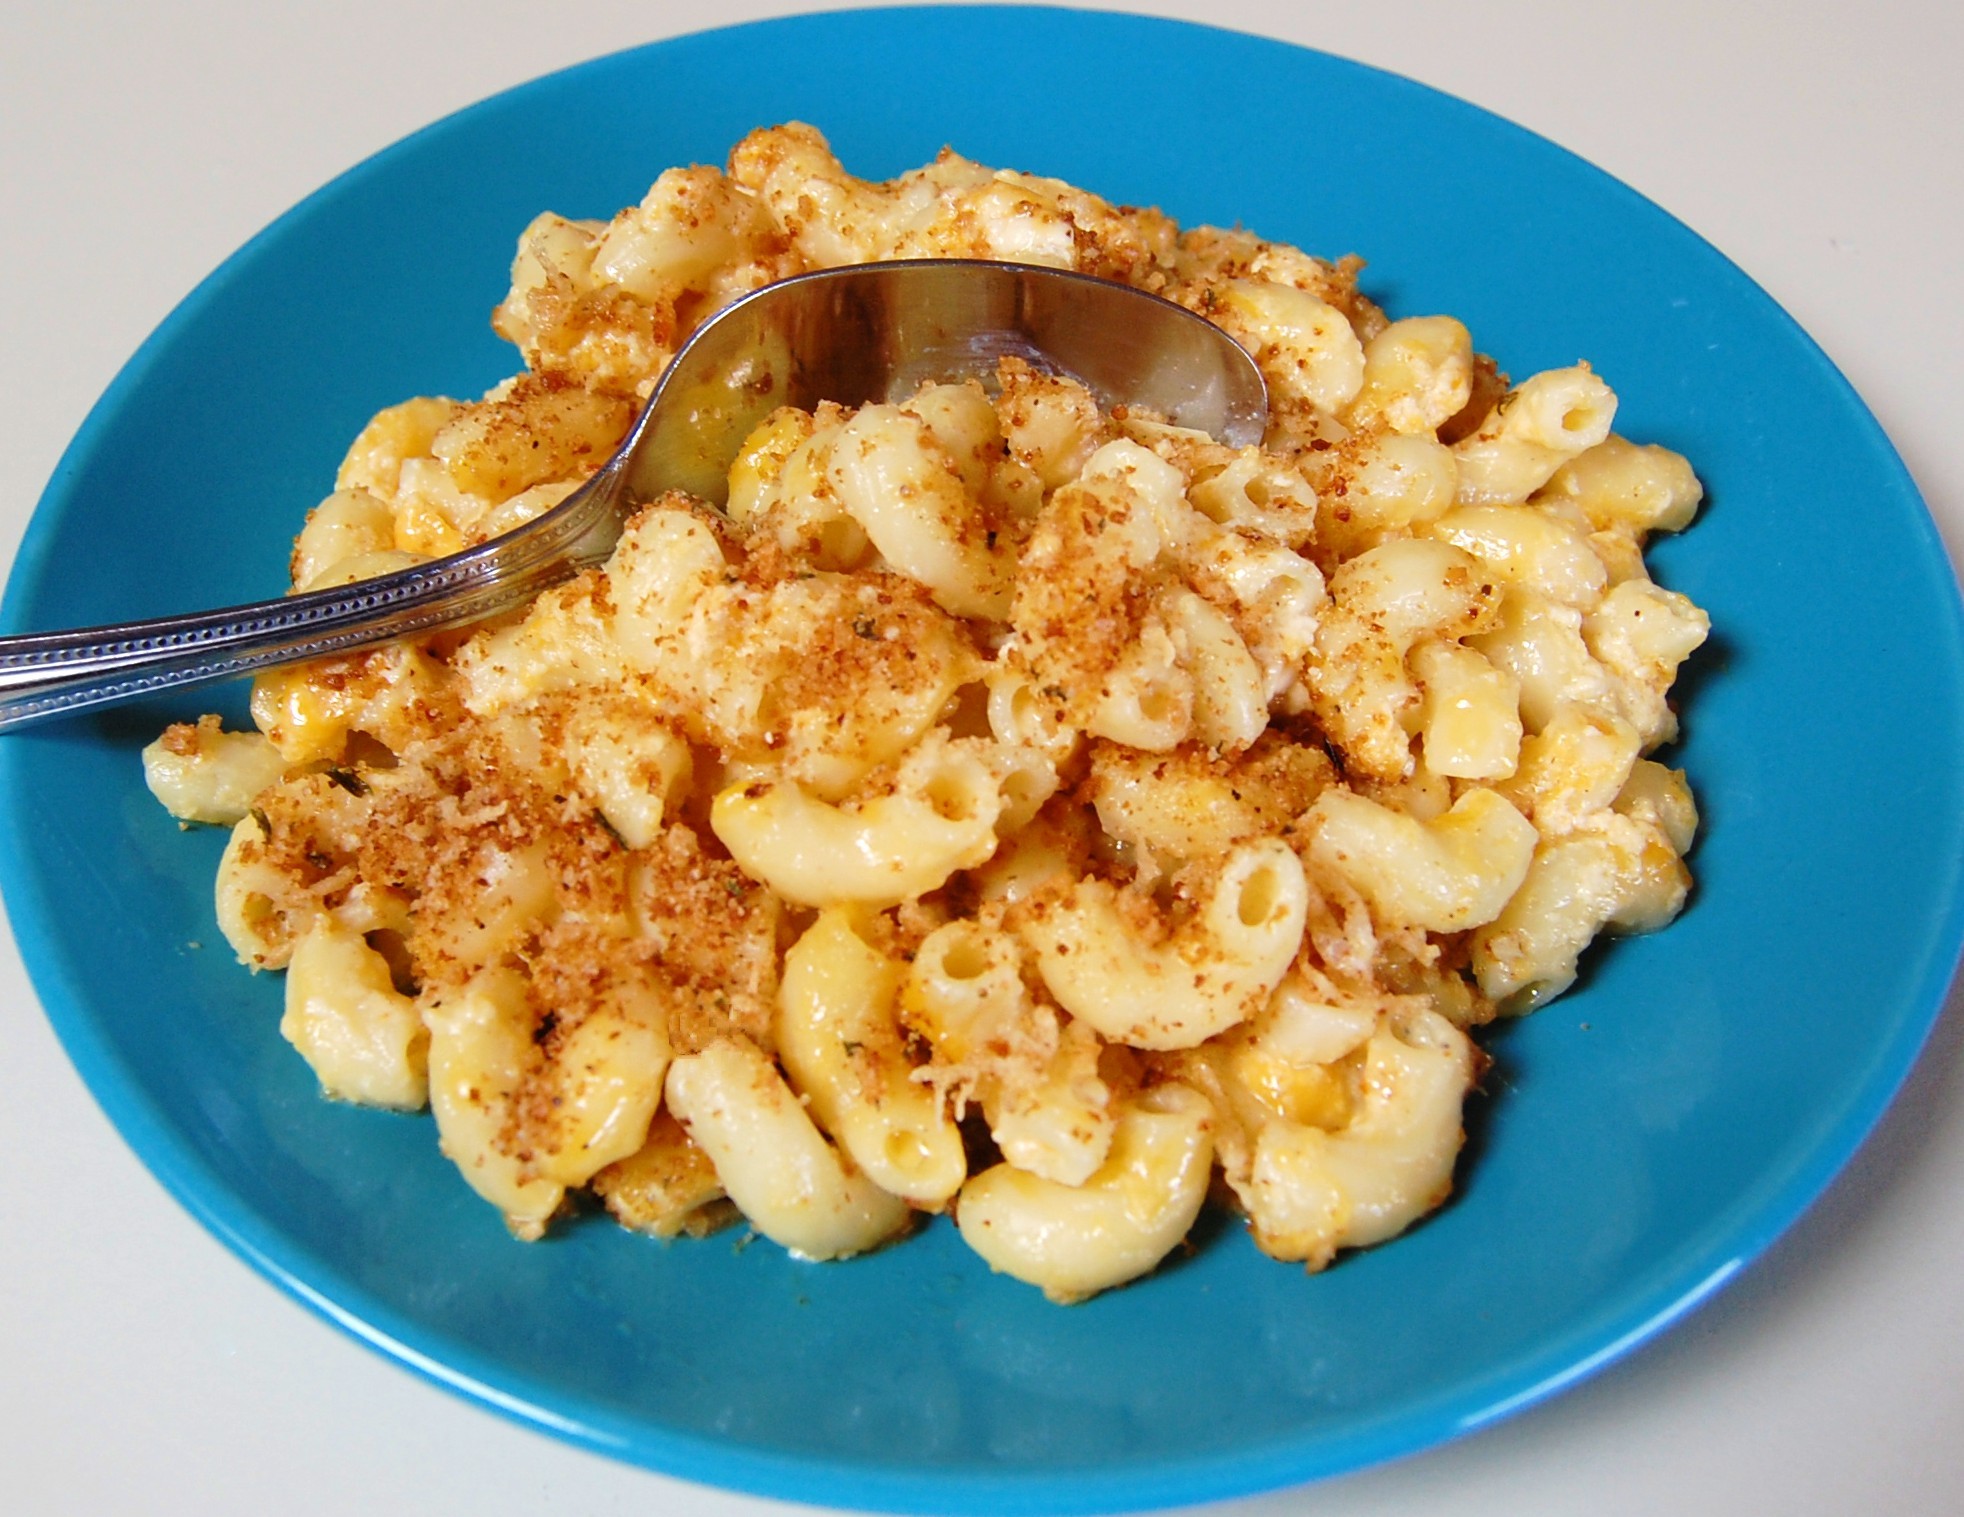 macaroni and cheese crock pot recipe